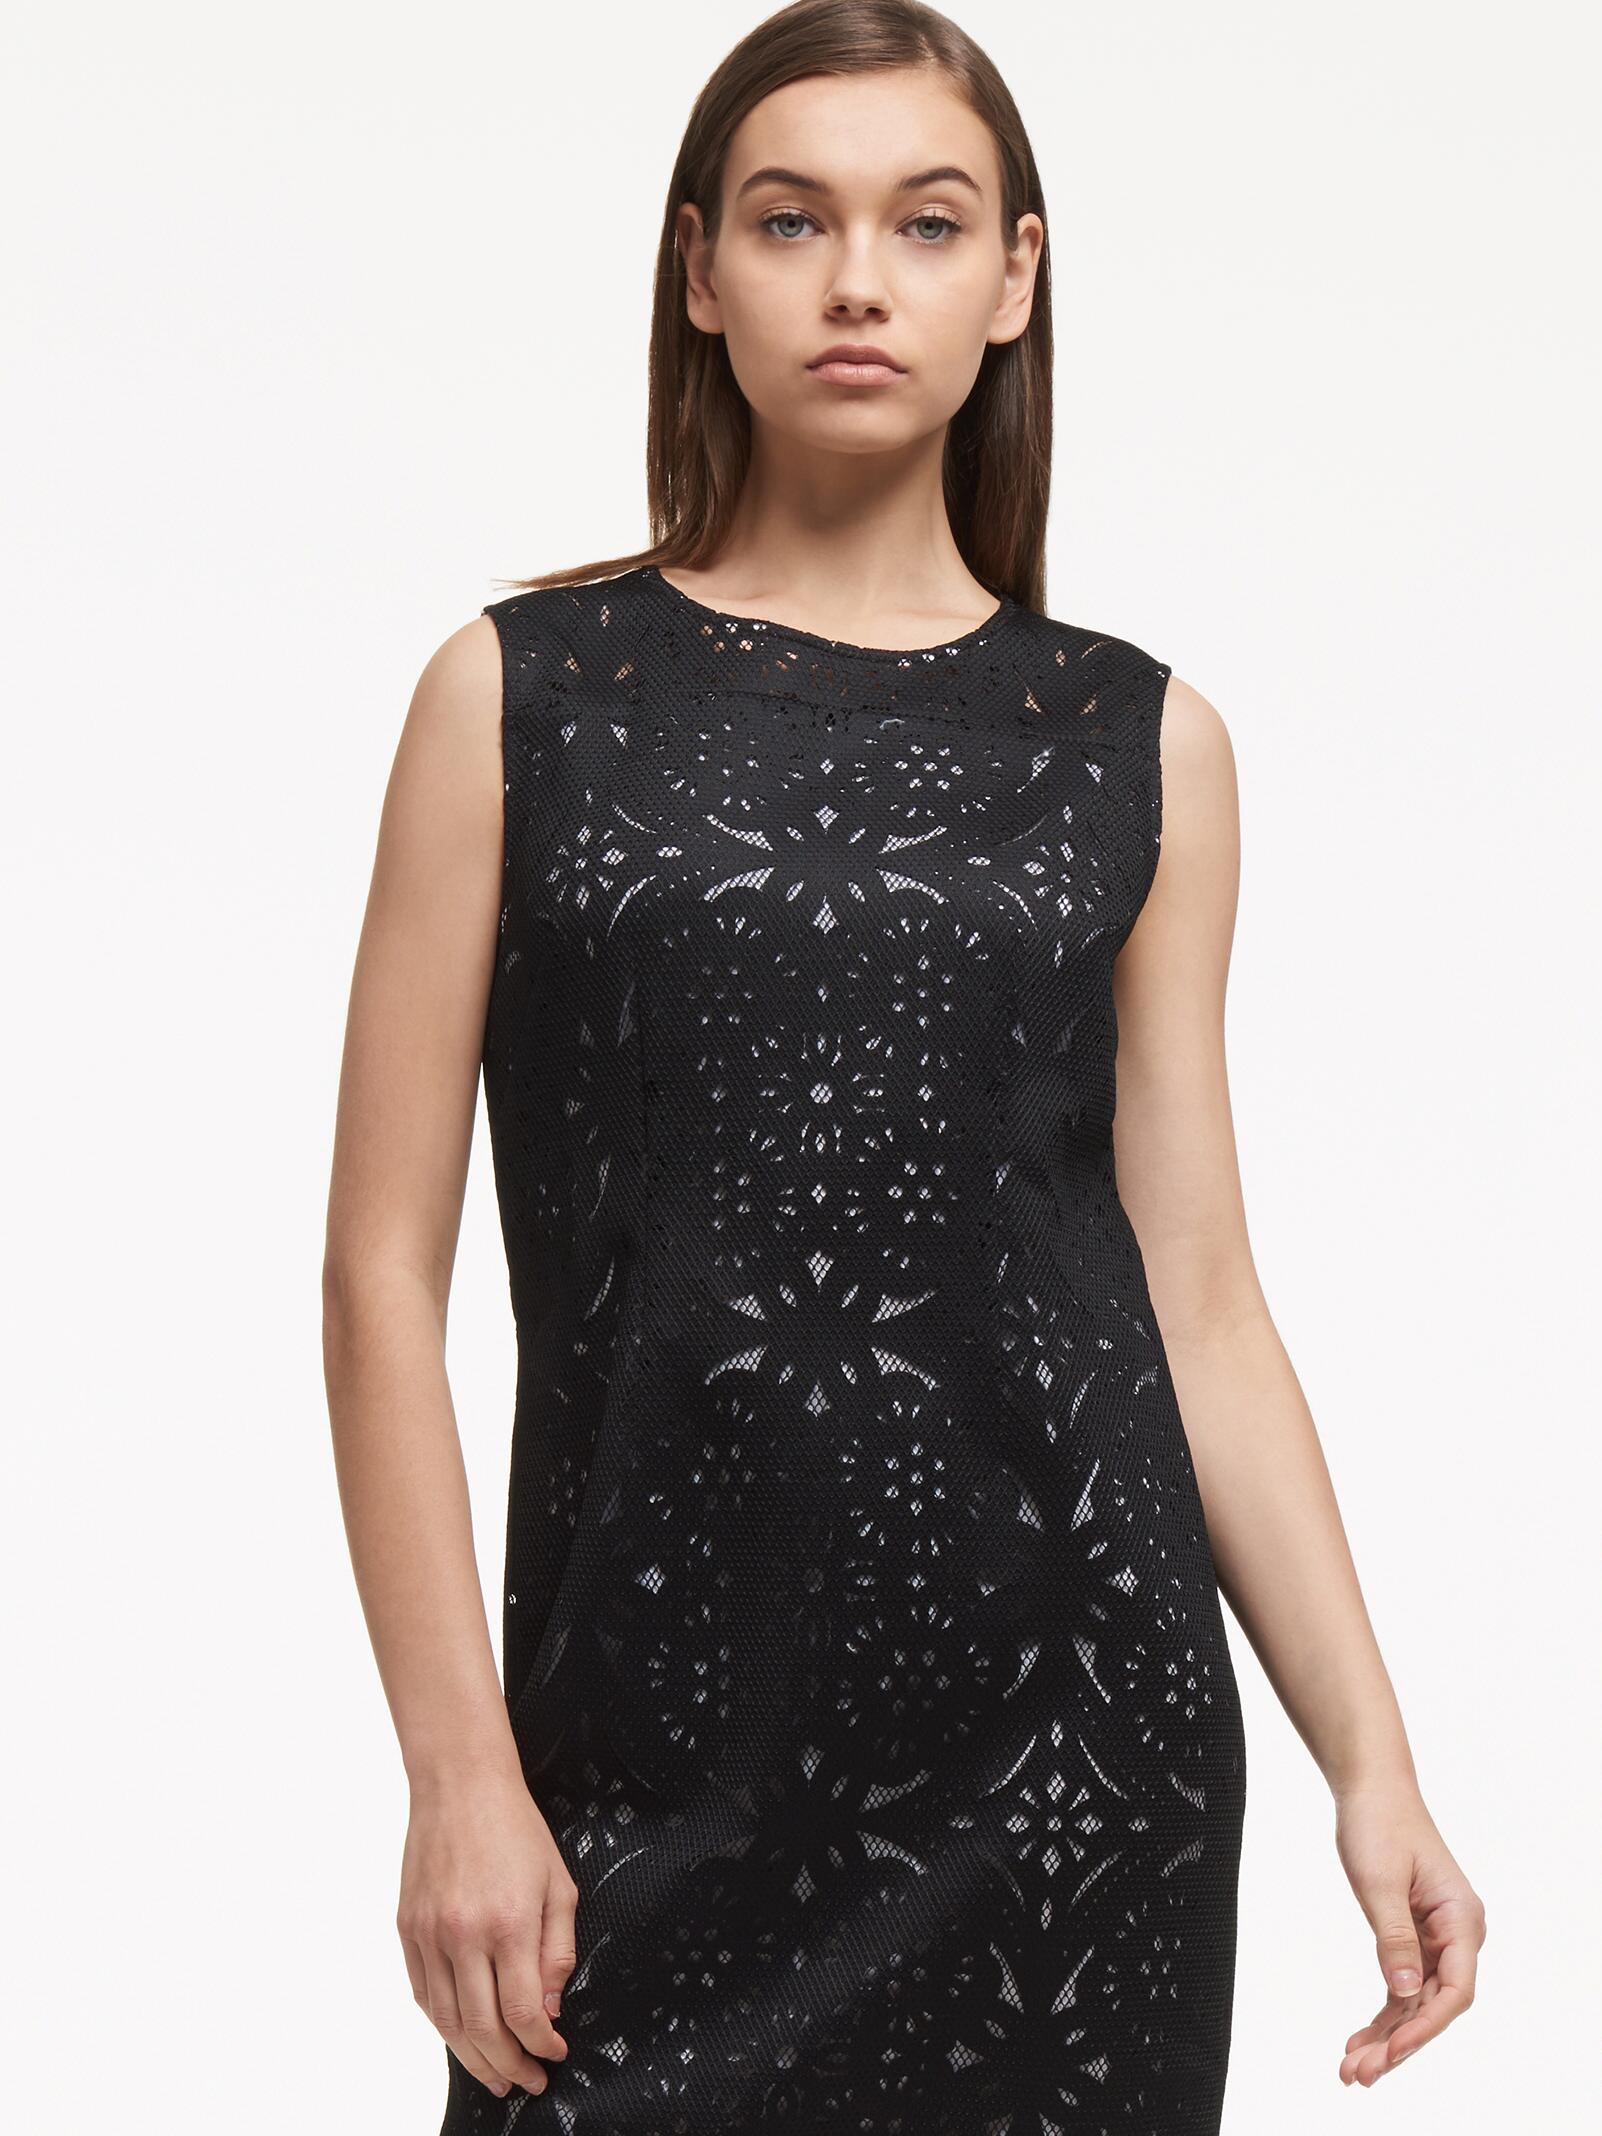 DKNY Laser Cut Sheath Dress With Mesh in Black - Lyst